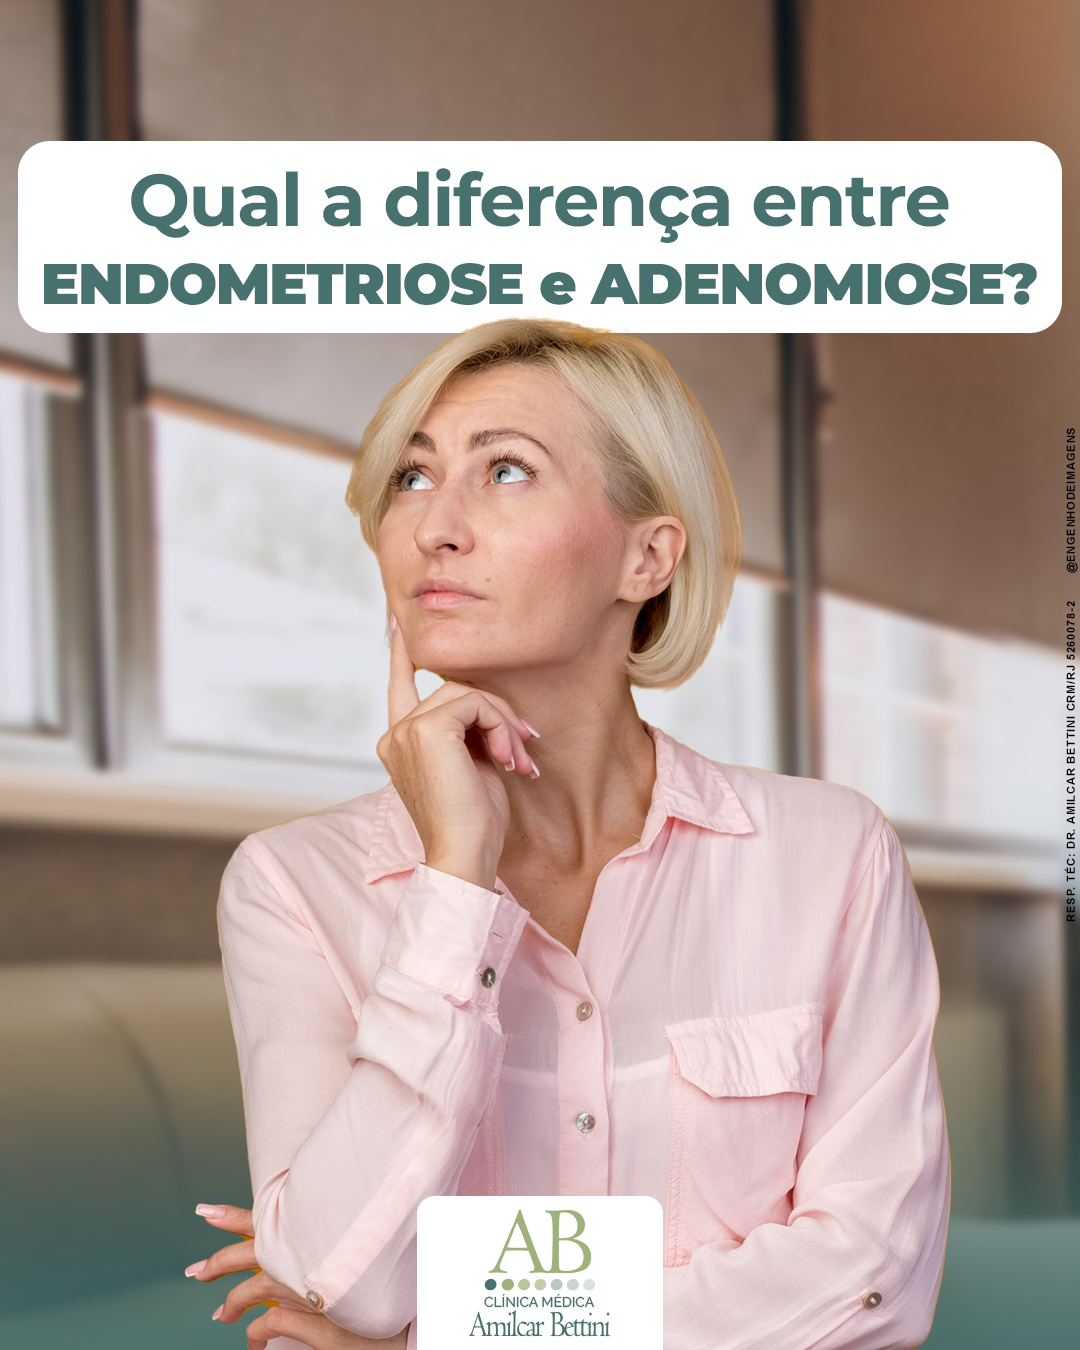 Endometriose é parecida com adenomiose?